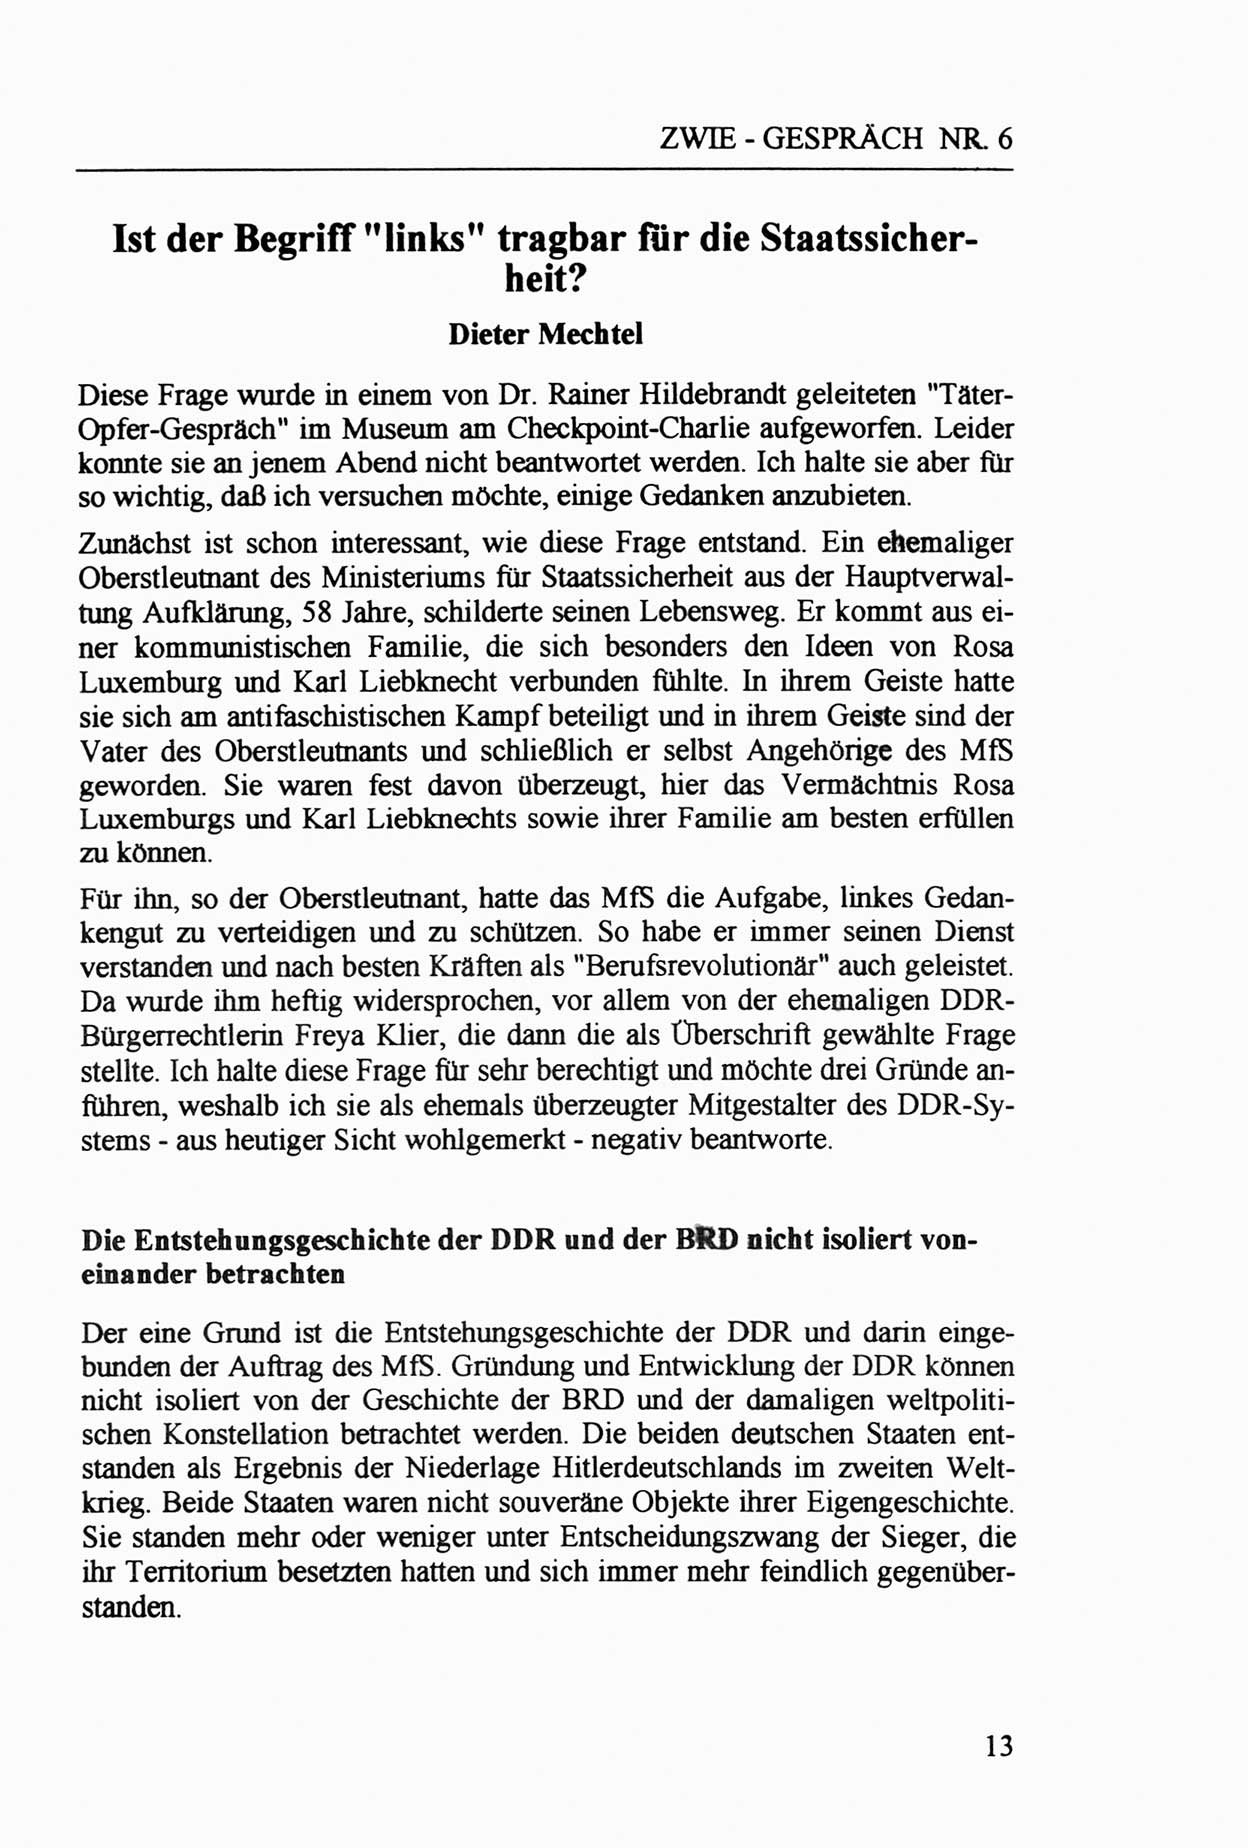 Zwie-Gespräch, Beiträge zur Aufarbeitung der Staatssicherheits-Vergangenheit [Deutsche Demokratische Republik (DDR)], Ausgabe Nr. 6, Berlin 1992, Seite 13 (Zwie-Gespr. Ausg. 6 1992, S. 13)